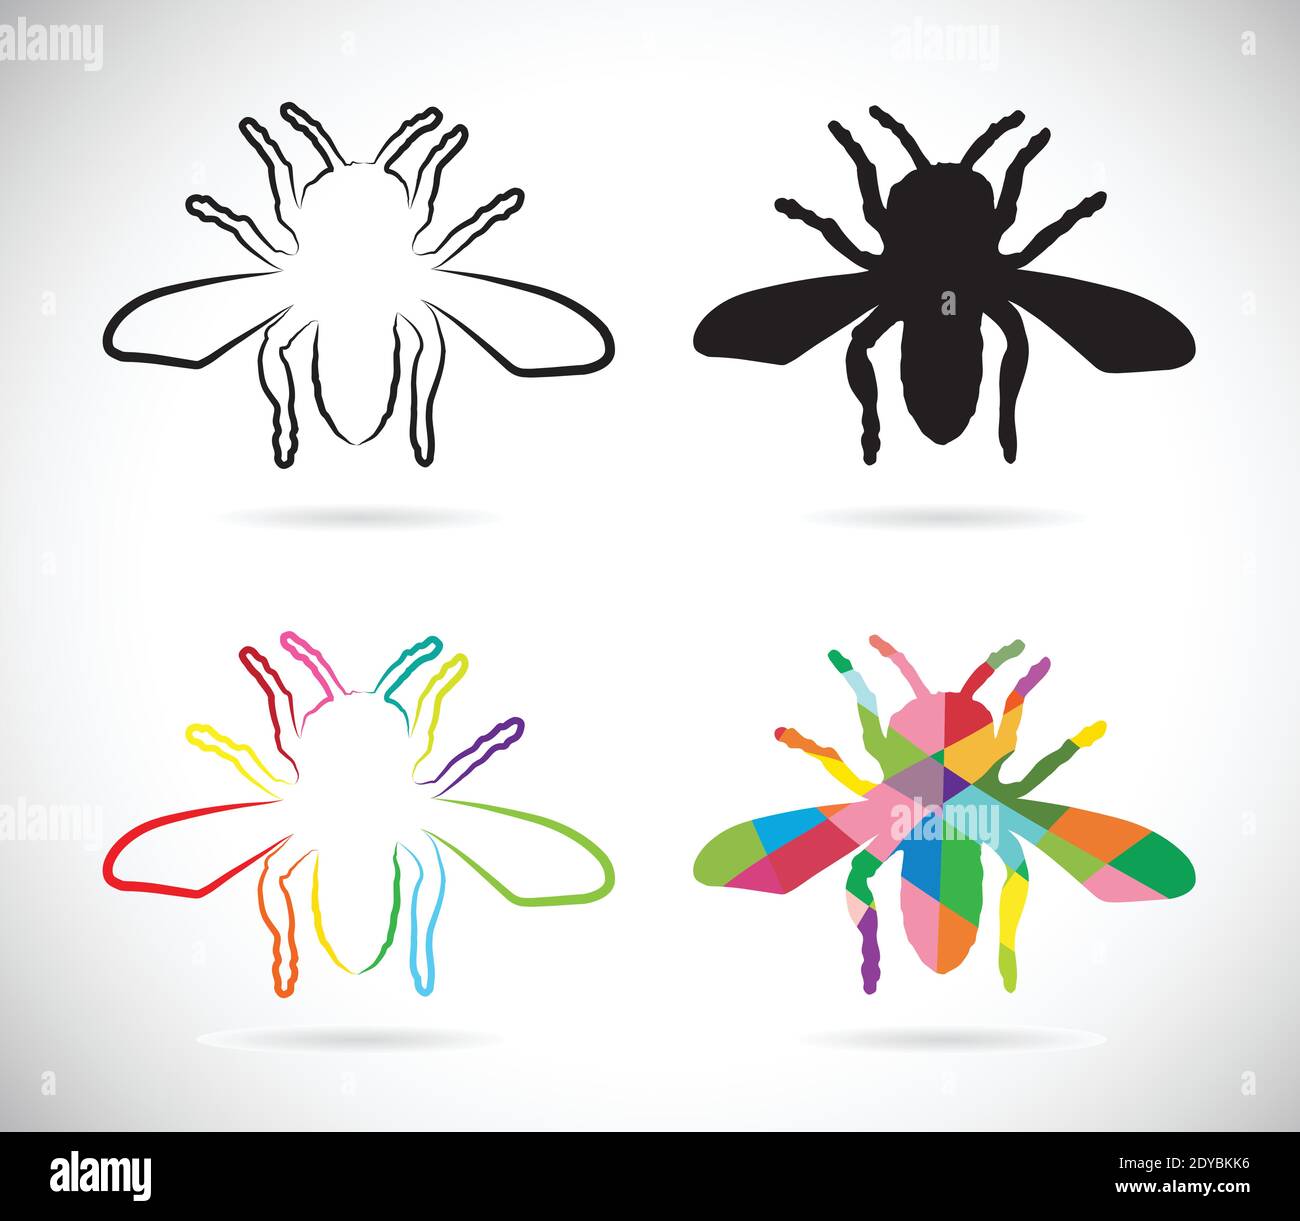 Vecteur d'insectes sur fond blanc. Illustration vectorielle superposée facile à modifier. Insecte. Illustration de Vecteur